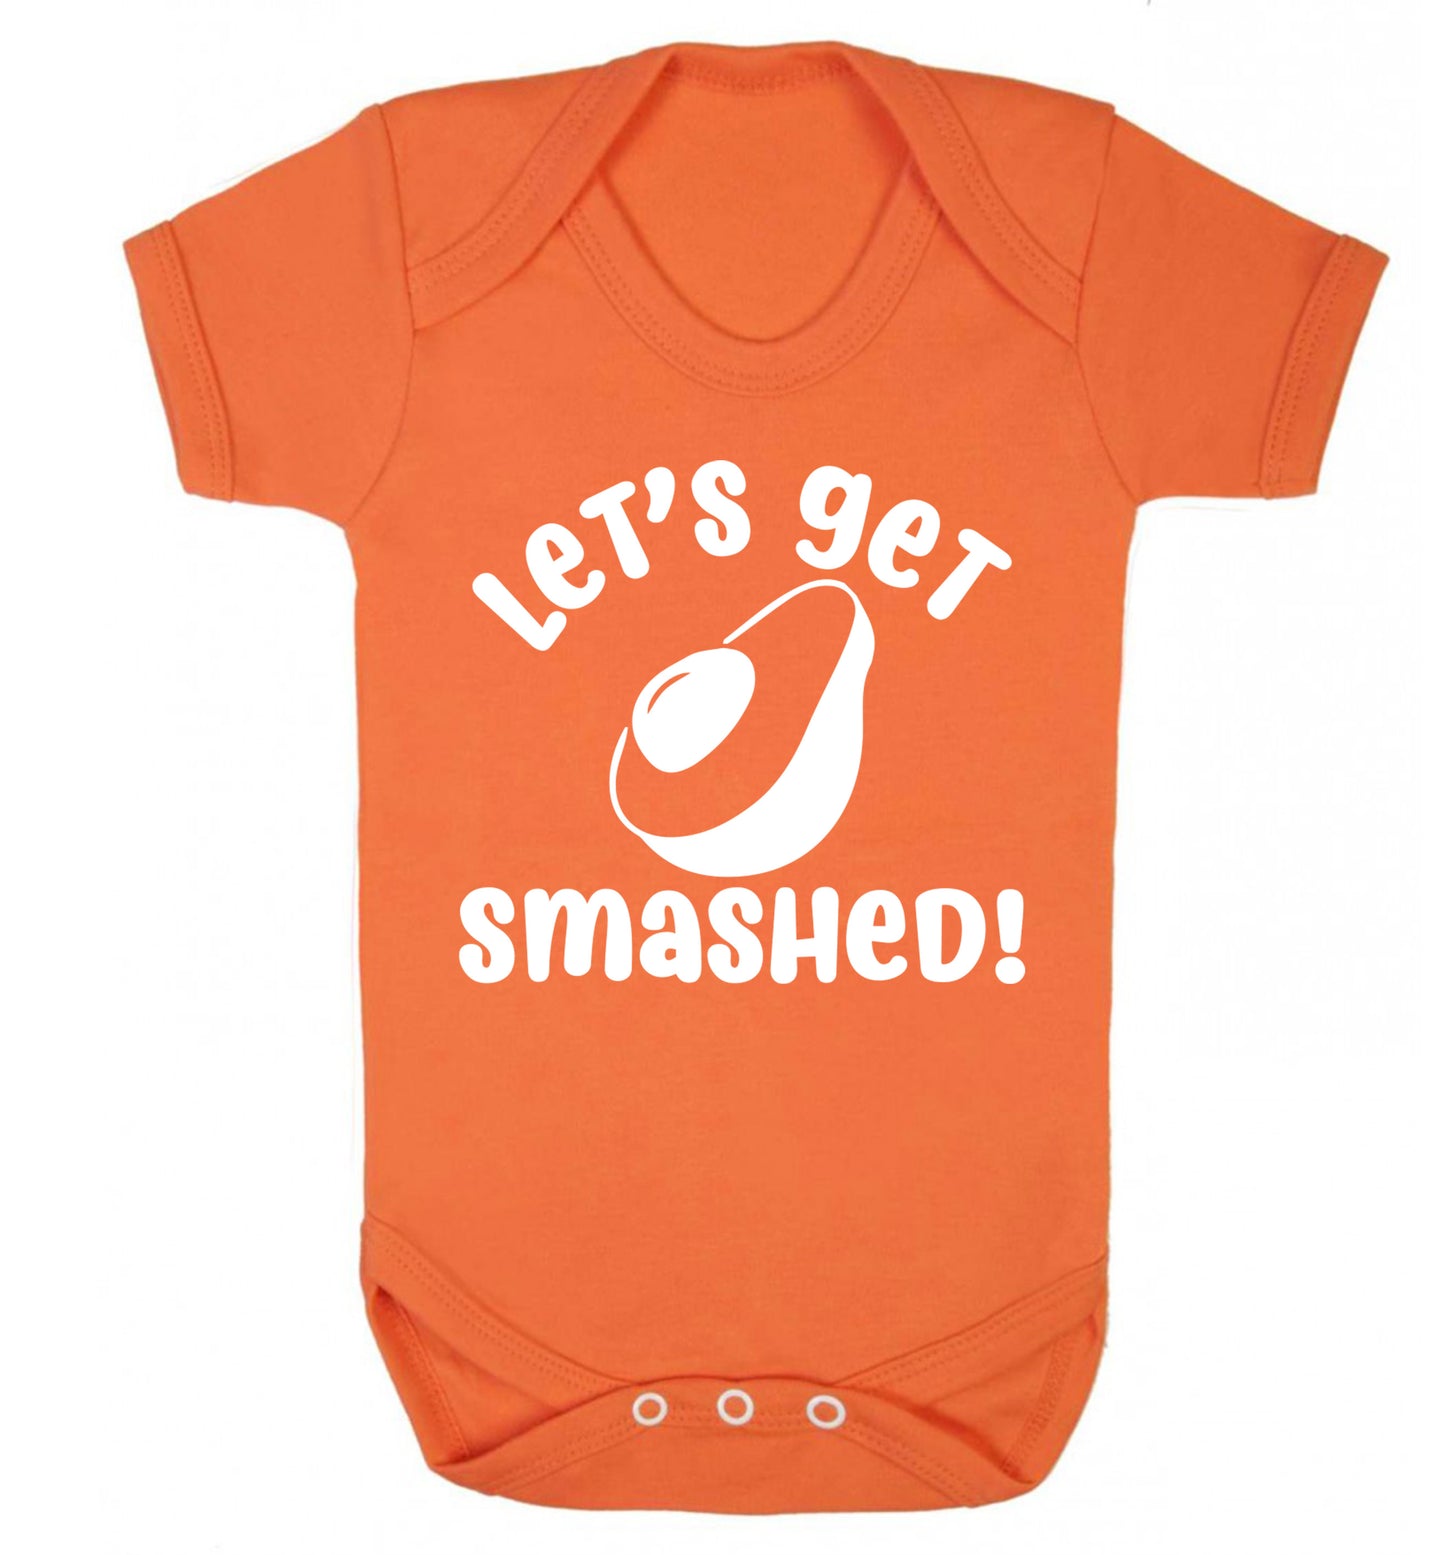 Let's get smashed Baby Vest orange 18-24 months